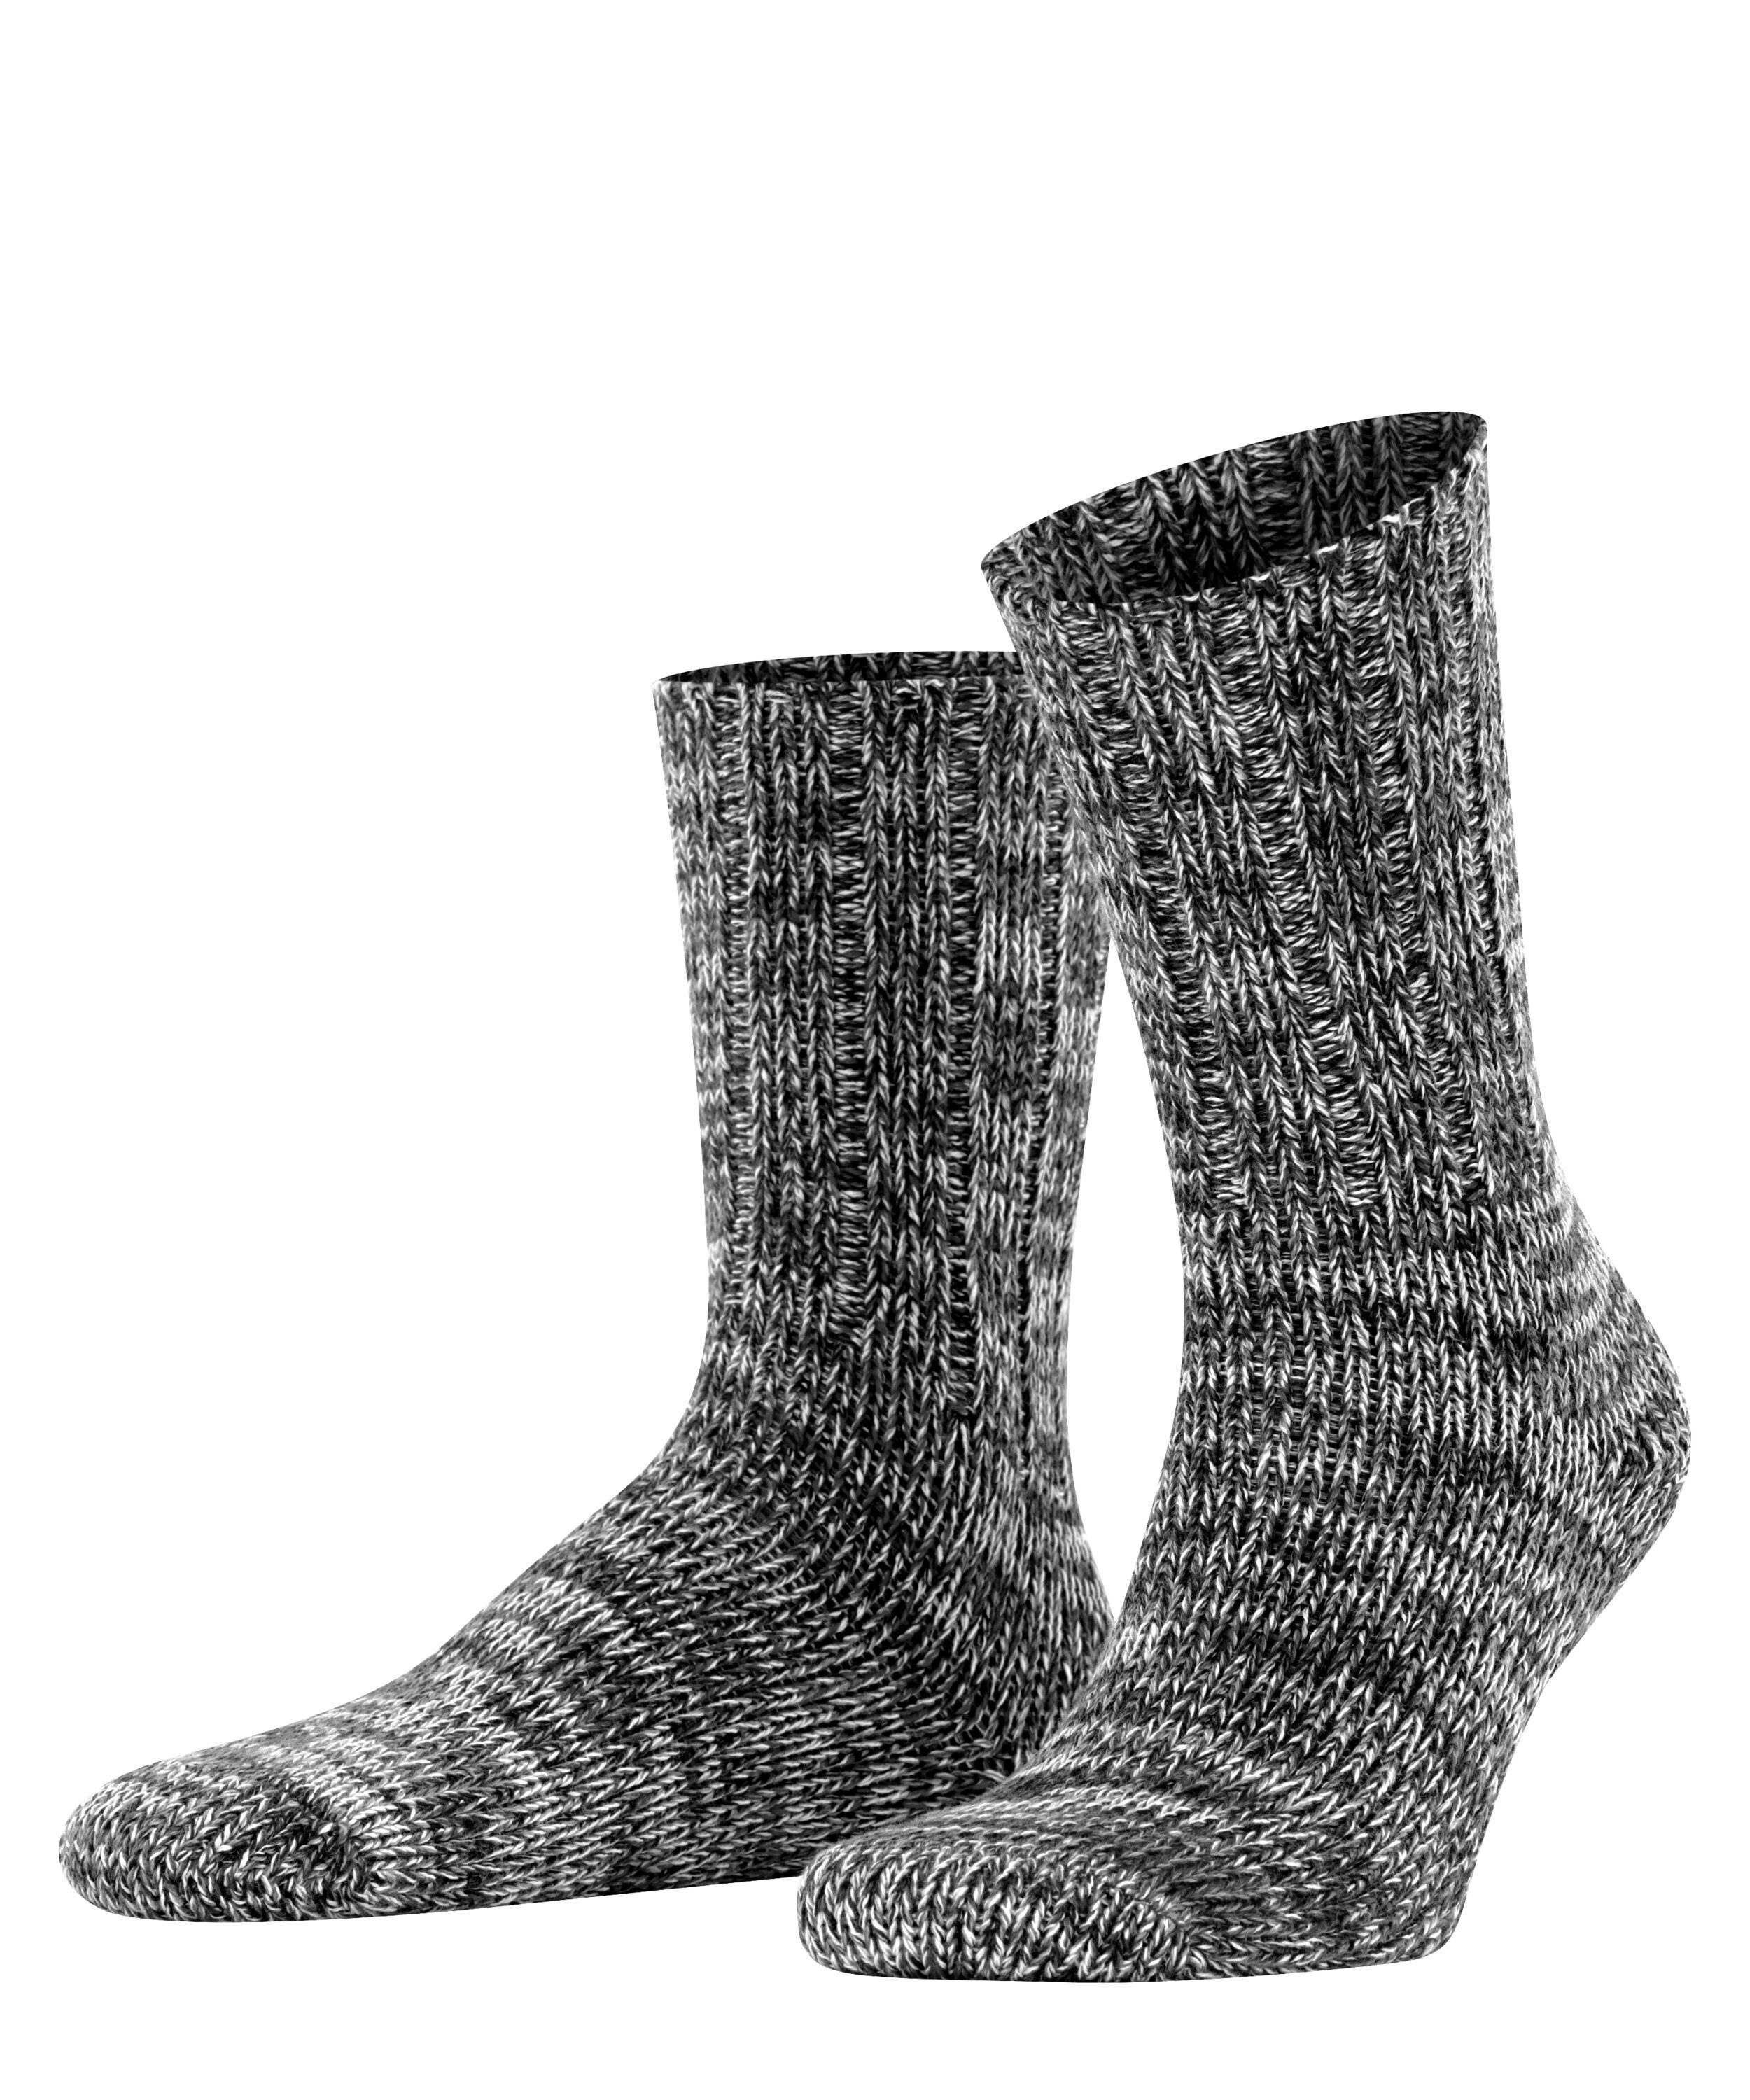 FALKE Socken Brooklyn (1-Paar) black (3000)